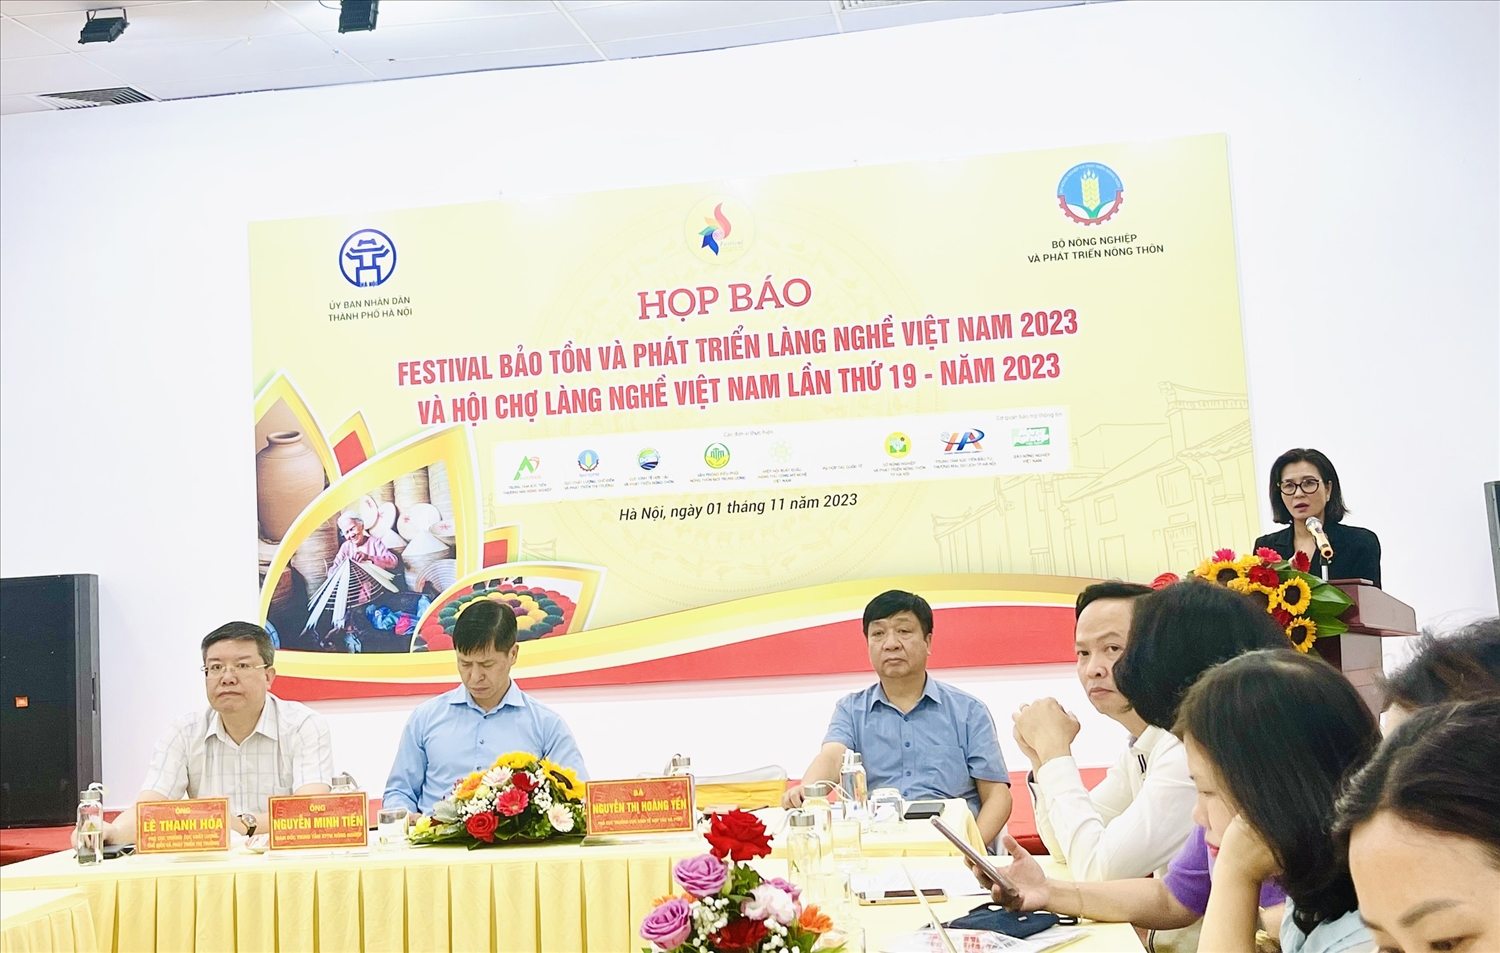 Các Đại biểu tham dự buổi Họp báo thông tin về Festival bảo tổn và phát triển làng nghề Việt Nam năm 2023